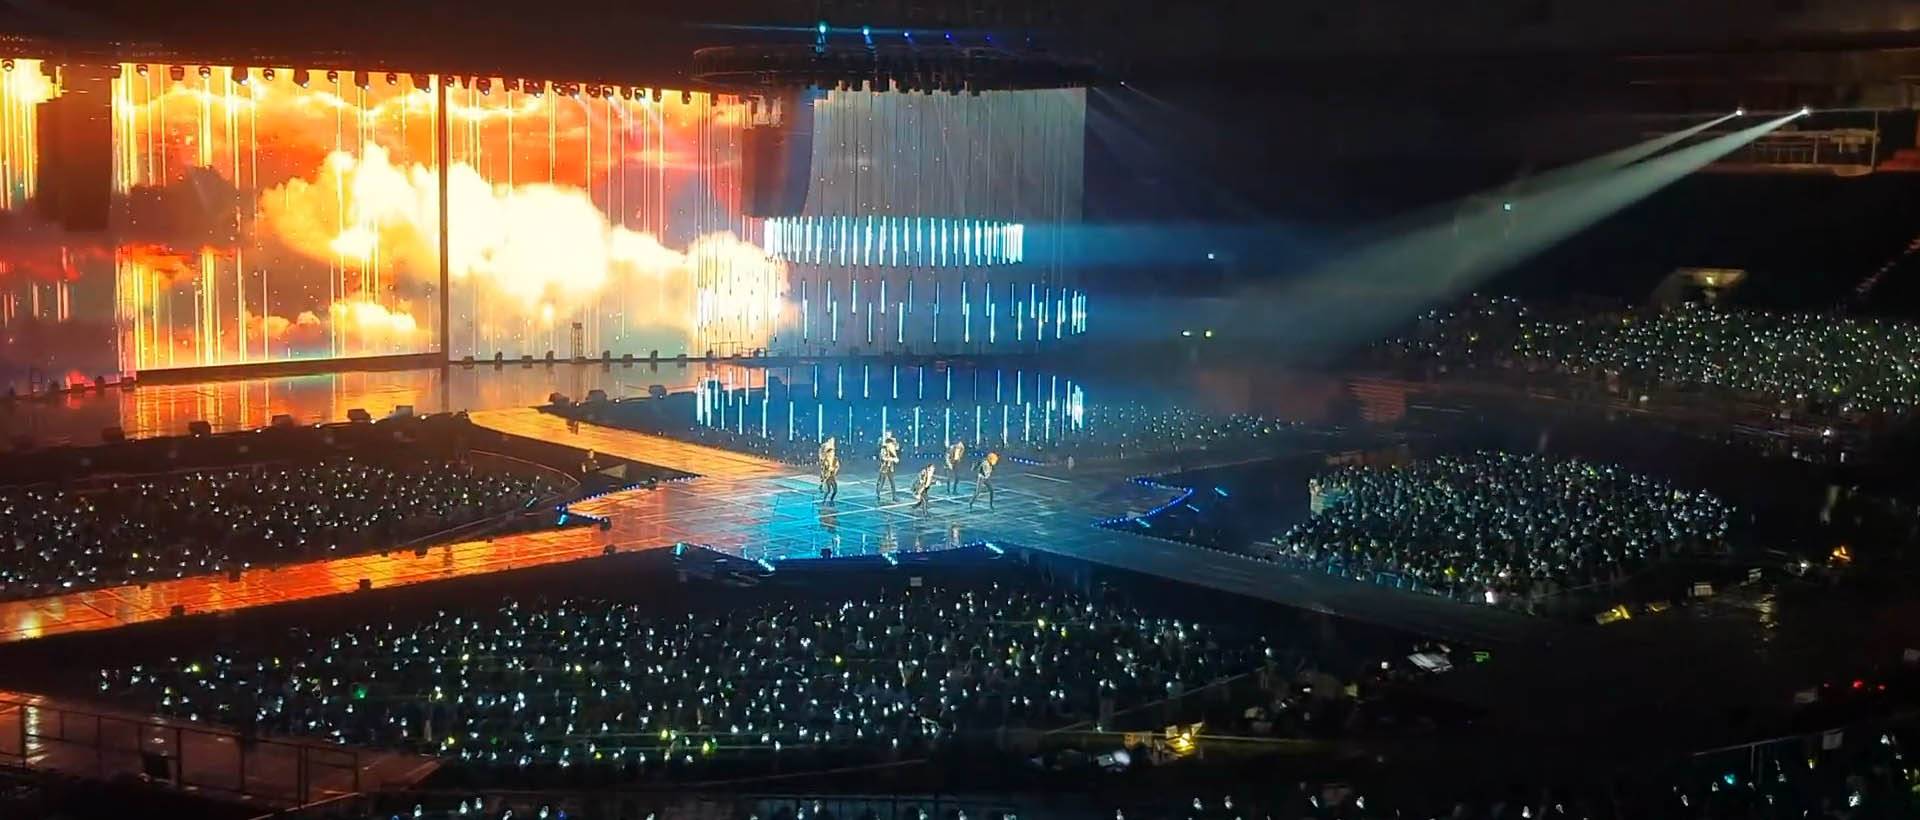 GOT7 2019 WORLD TOUR 'KEEP SPINNING' SPOT di Seoul, Korea (2)